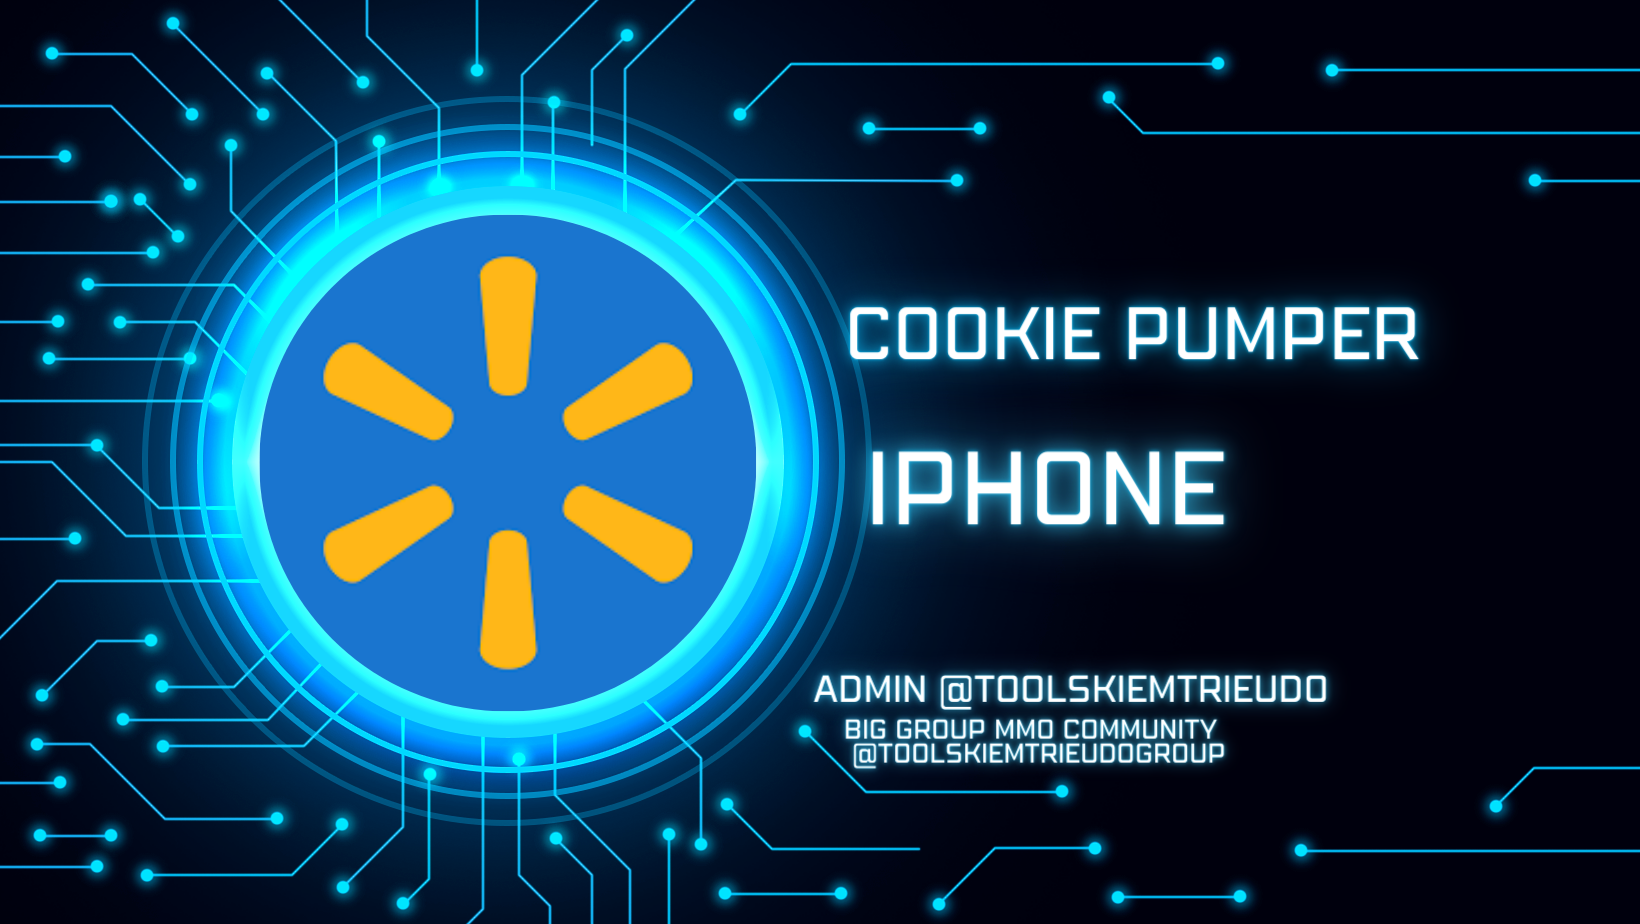 Công cụ nuôi tài khoản Walmart trên iPhone như người dùng thật- Walmart cookie Pumper on iPhone Automation like a human